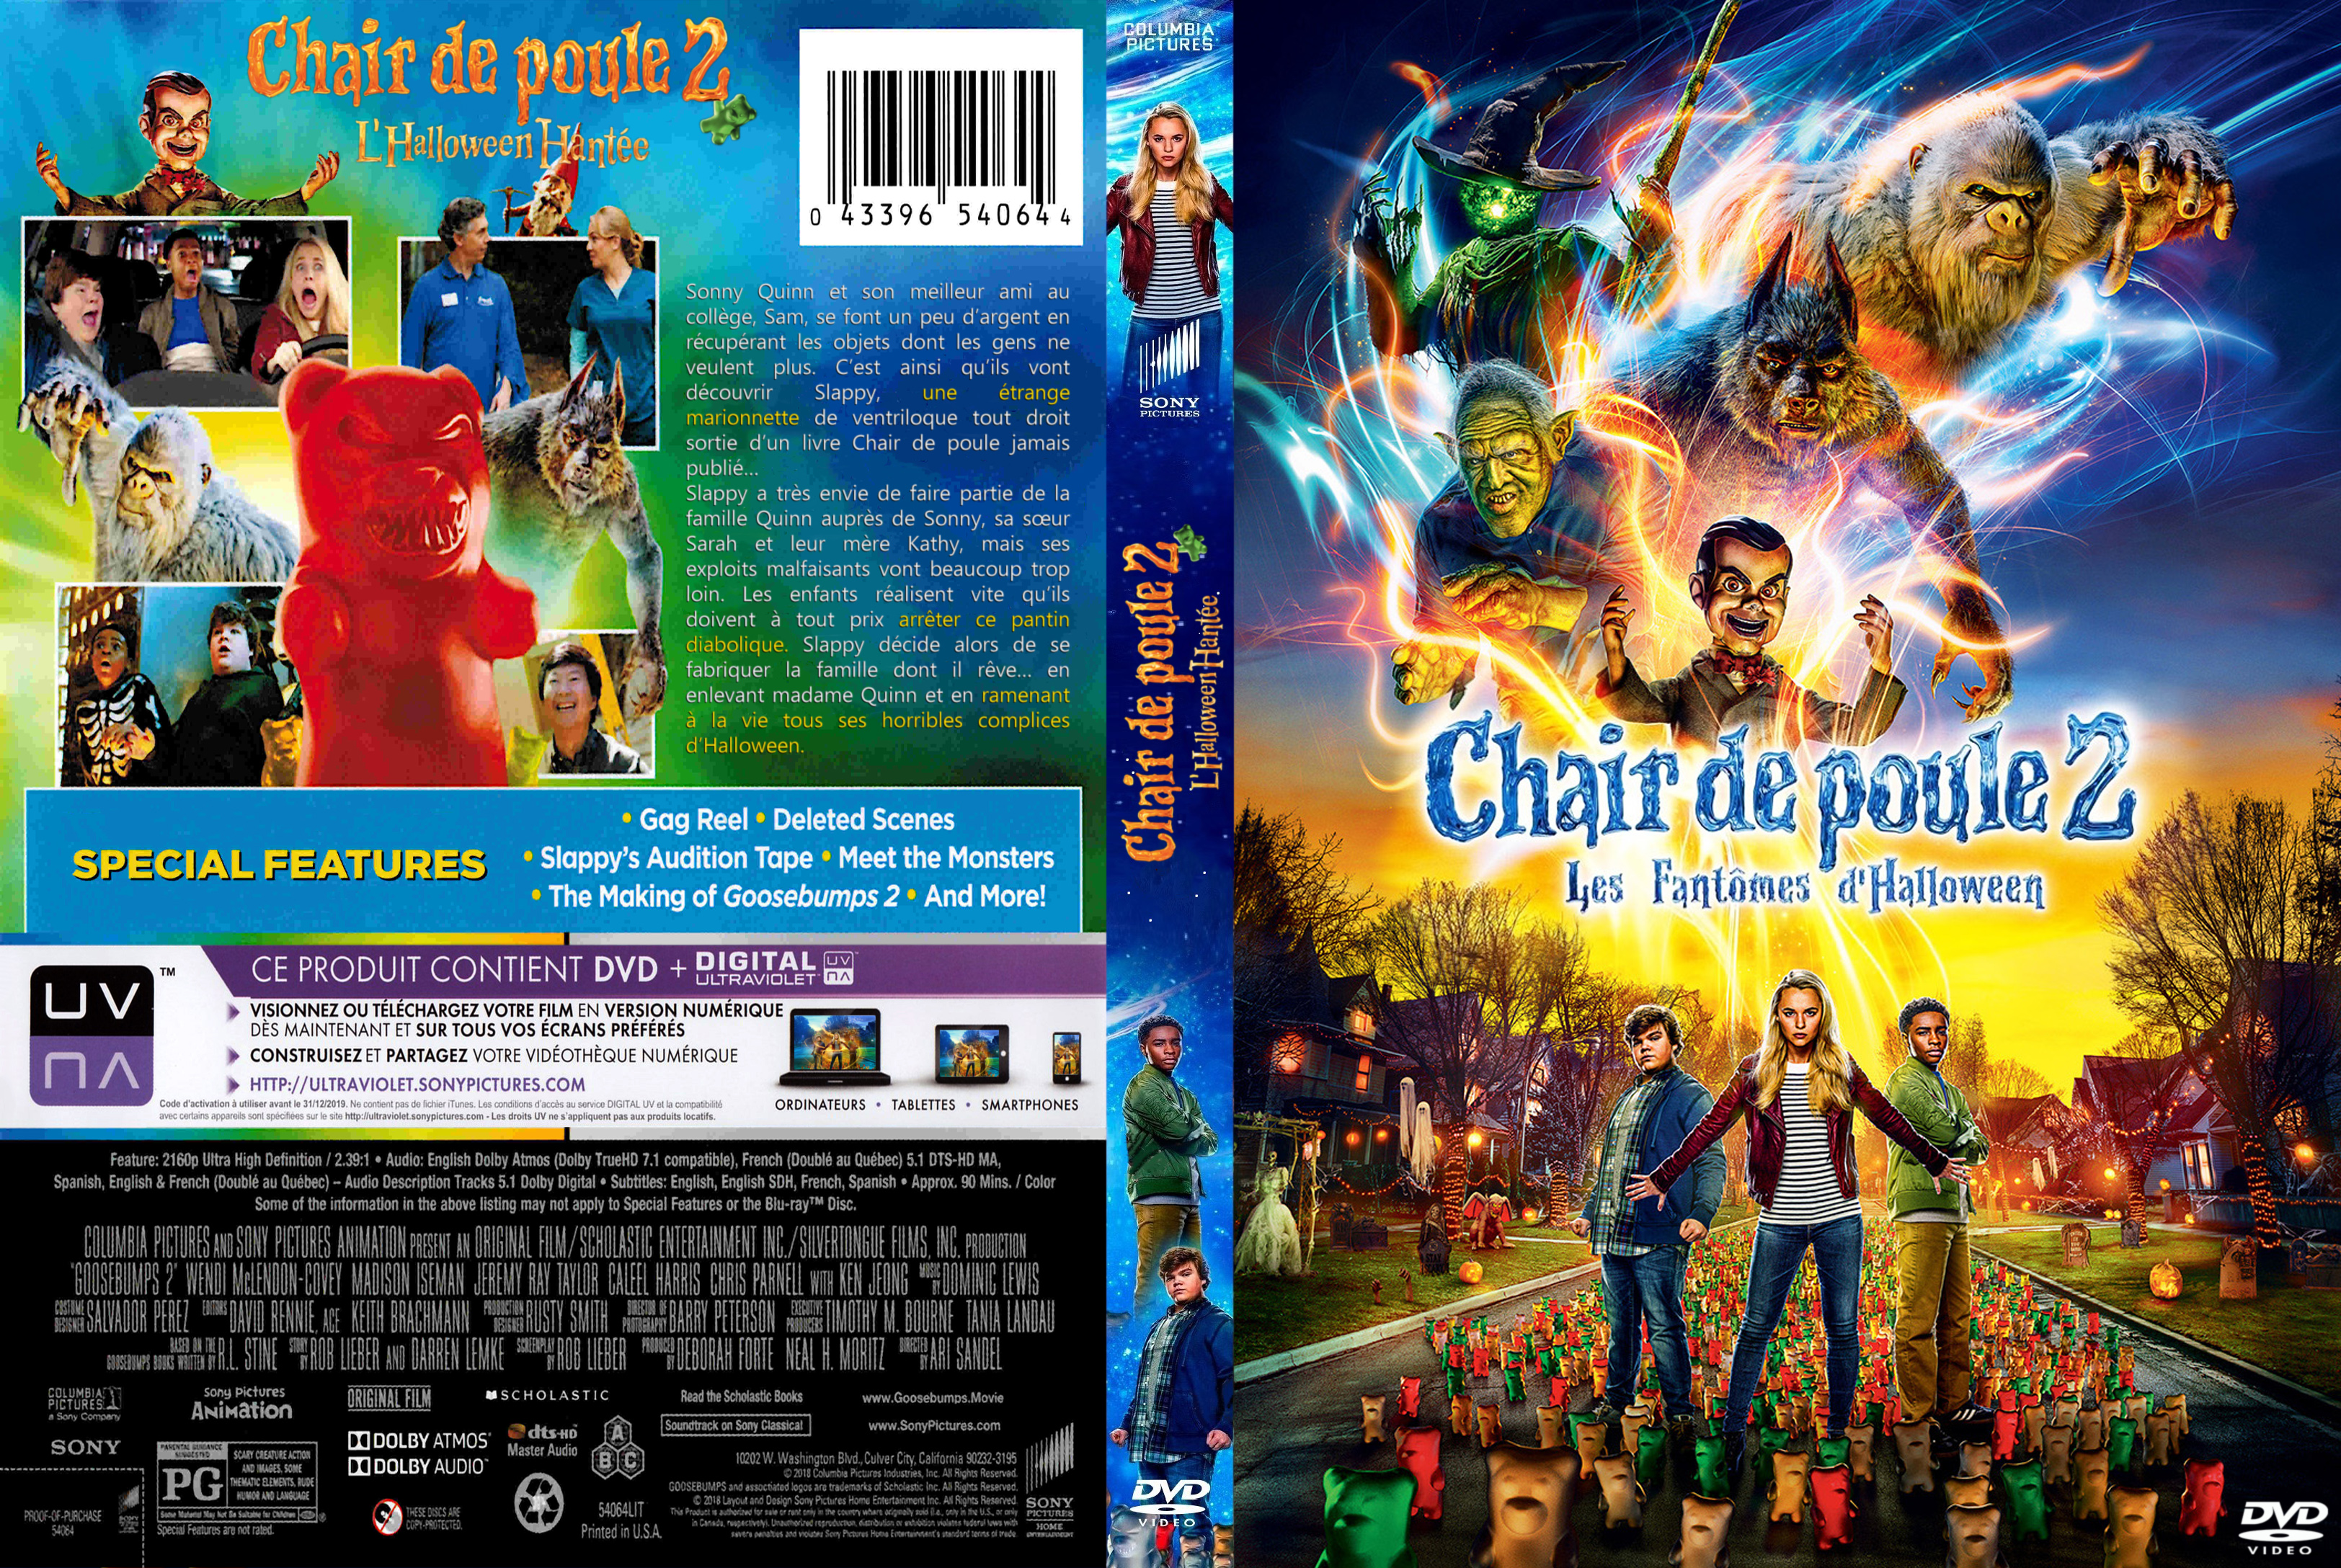 Jaquette Dvd De Chair De Poule 2 Les Fantomes D Halloween Custom V2 Cinema Passion